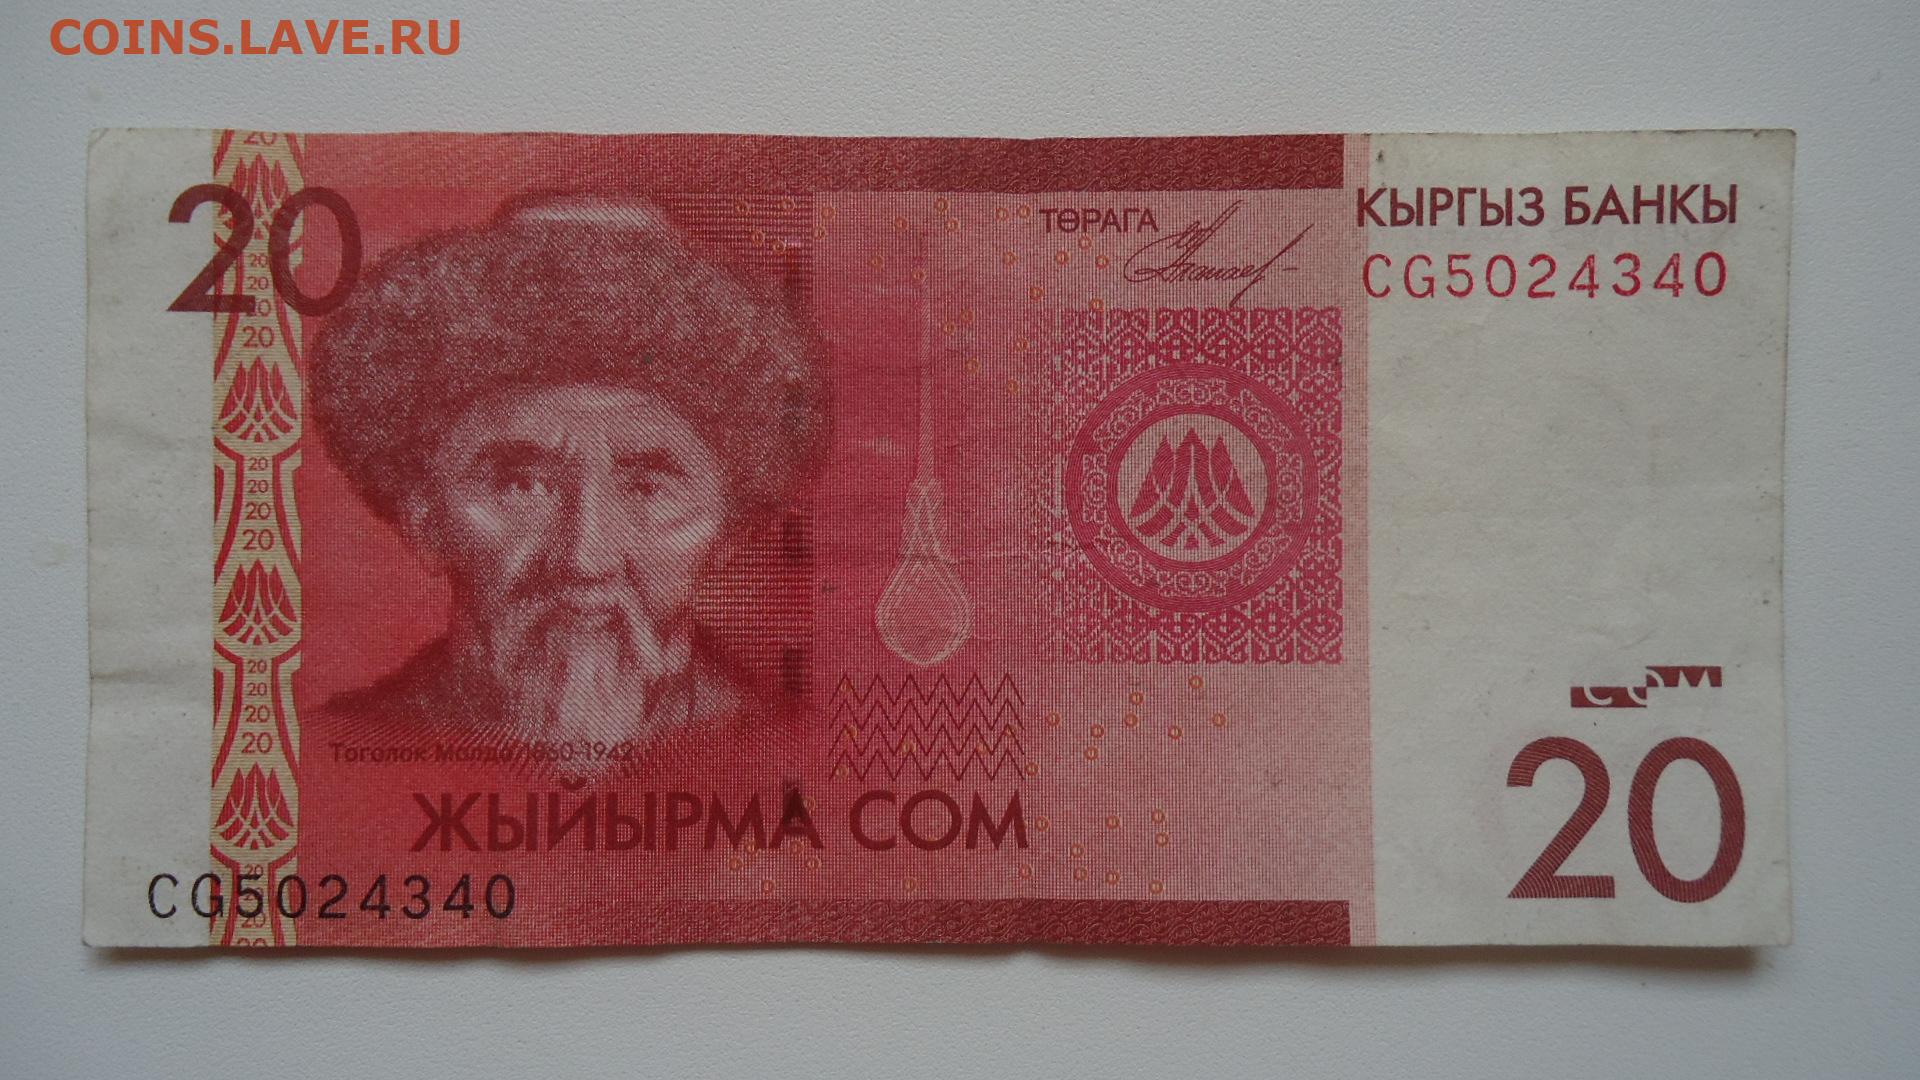 7800 сом в рублях. 20 Сом купюра. 20 Сом Киргизия. Киргизский сом. Киргизия 20 сом 2016.